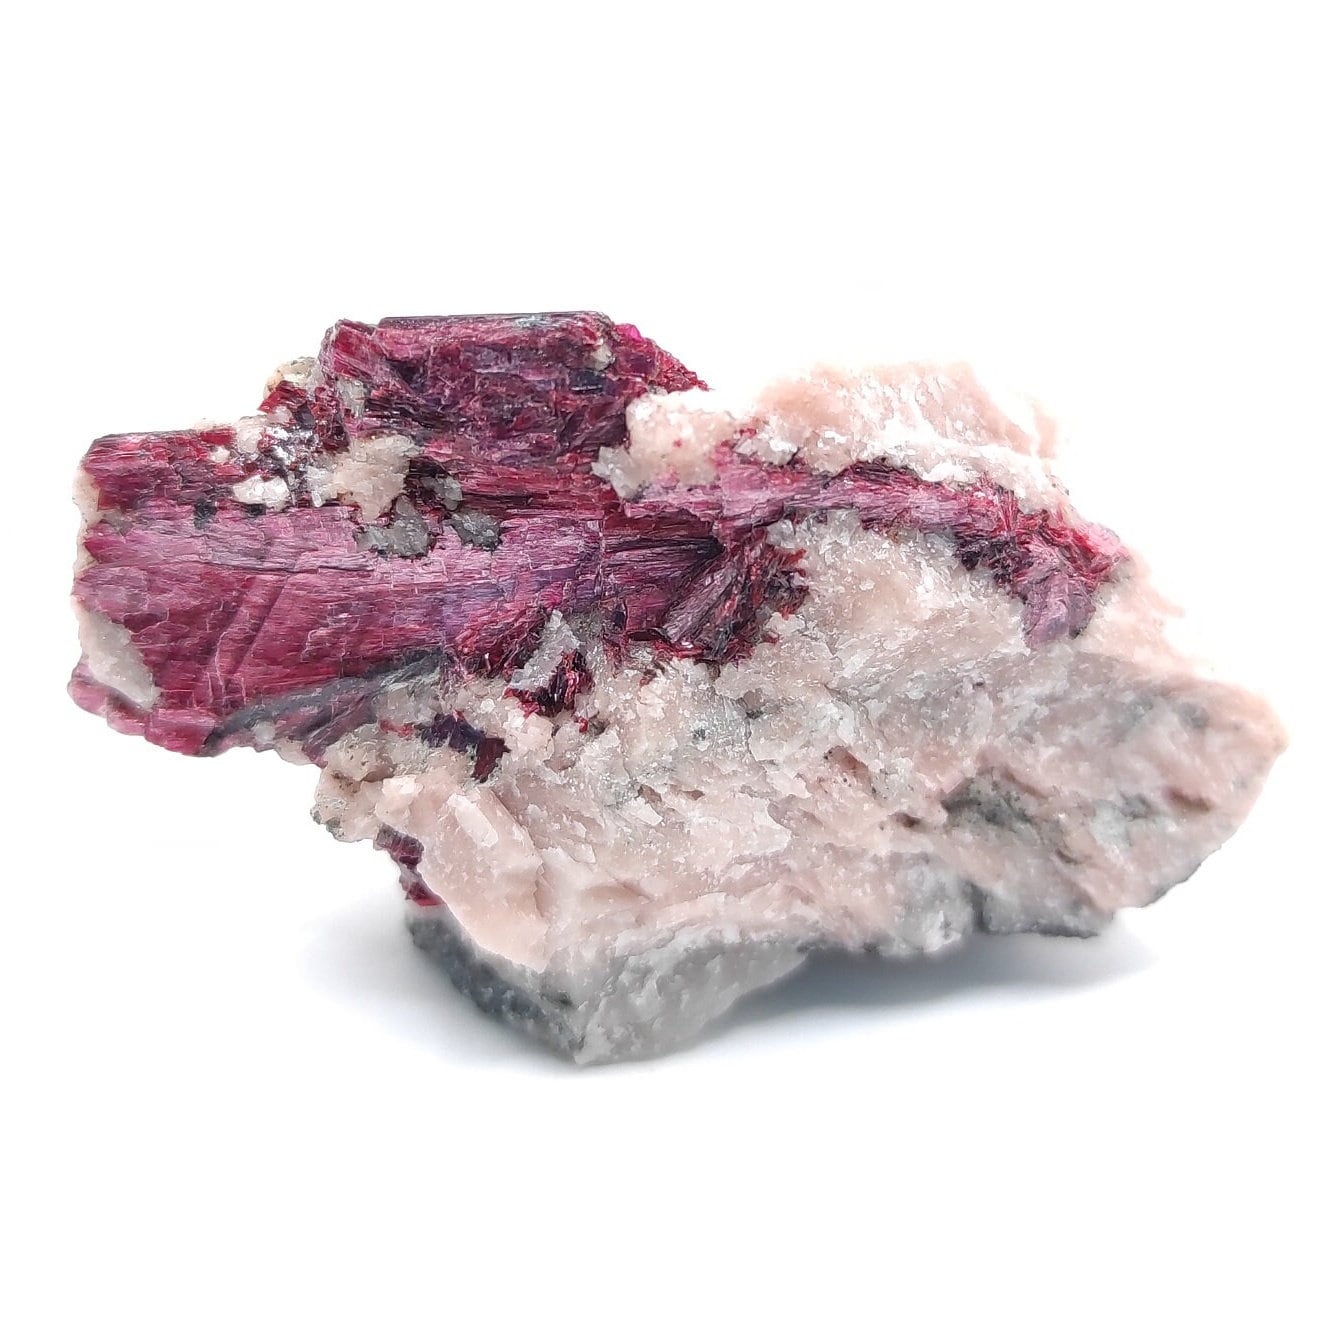 22g Erythrite Mineral Specimen - Bou Azzer, Morocco - Rare Erythrite Crystal Specimen - Cobalt Bloom Crystal - Raw Cobalt Crystal